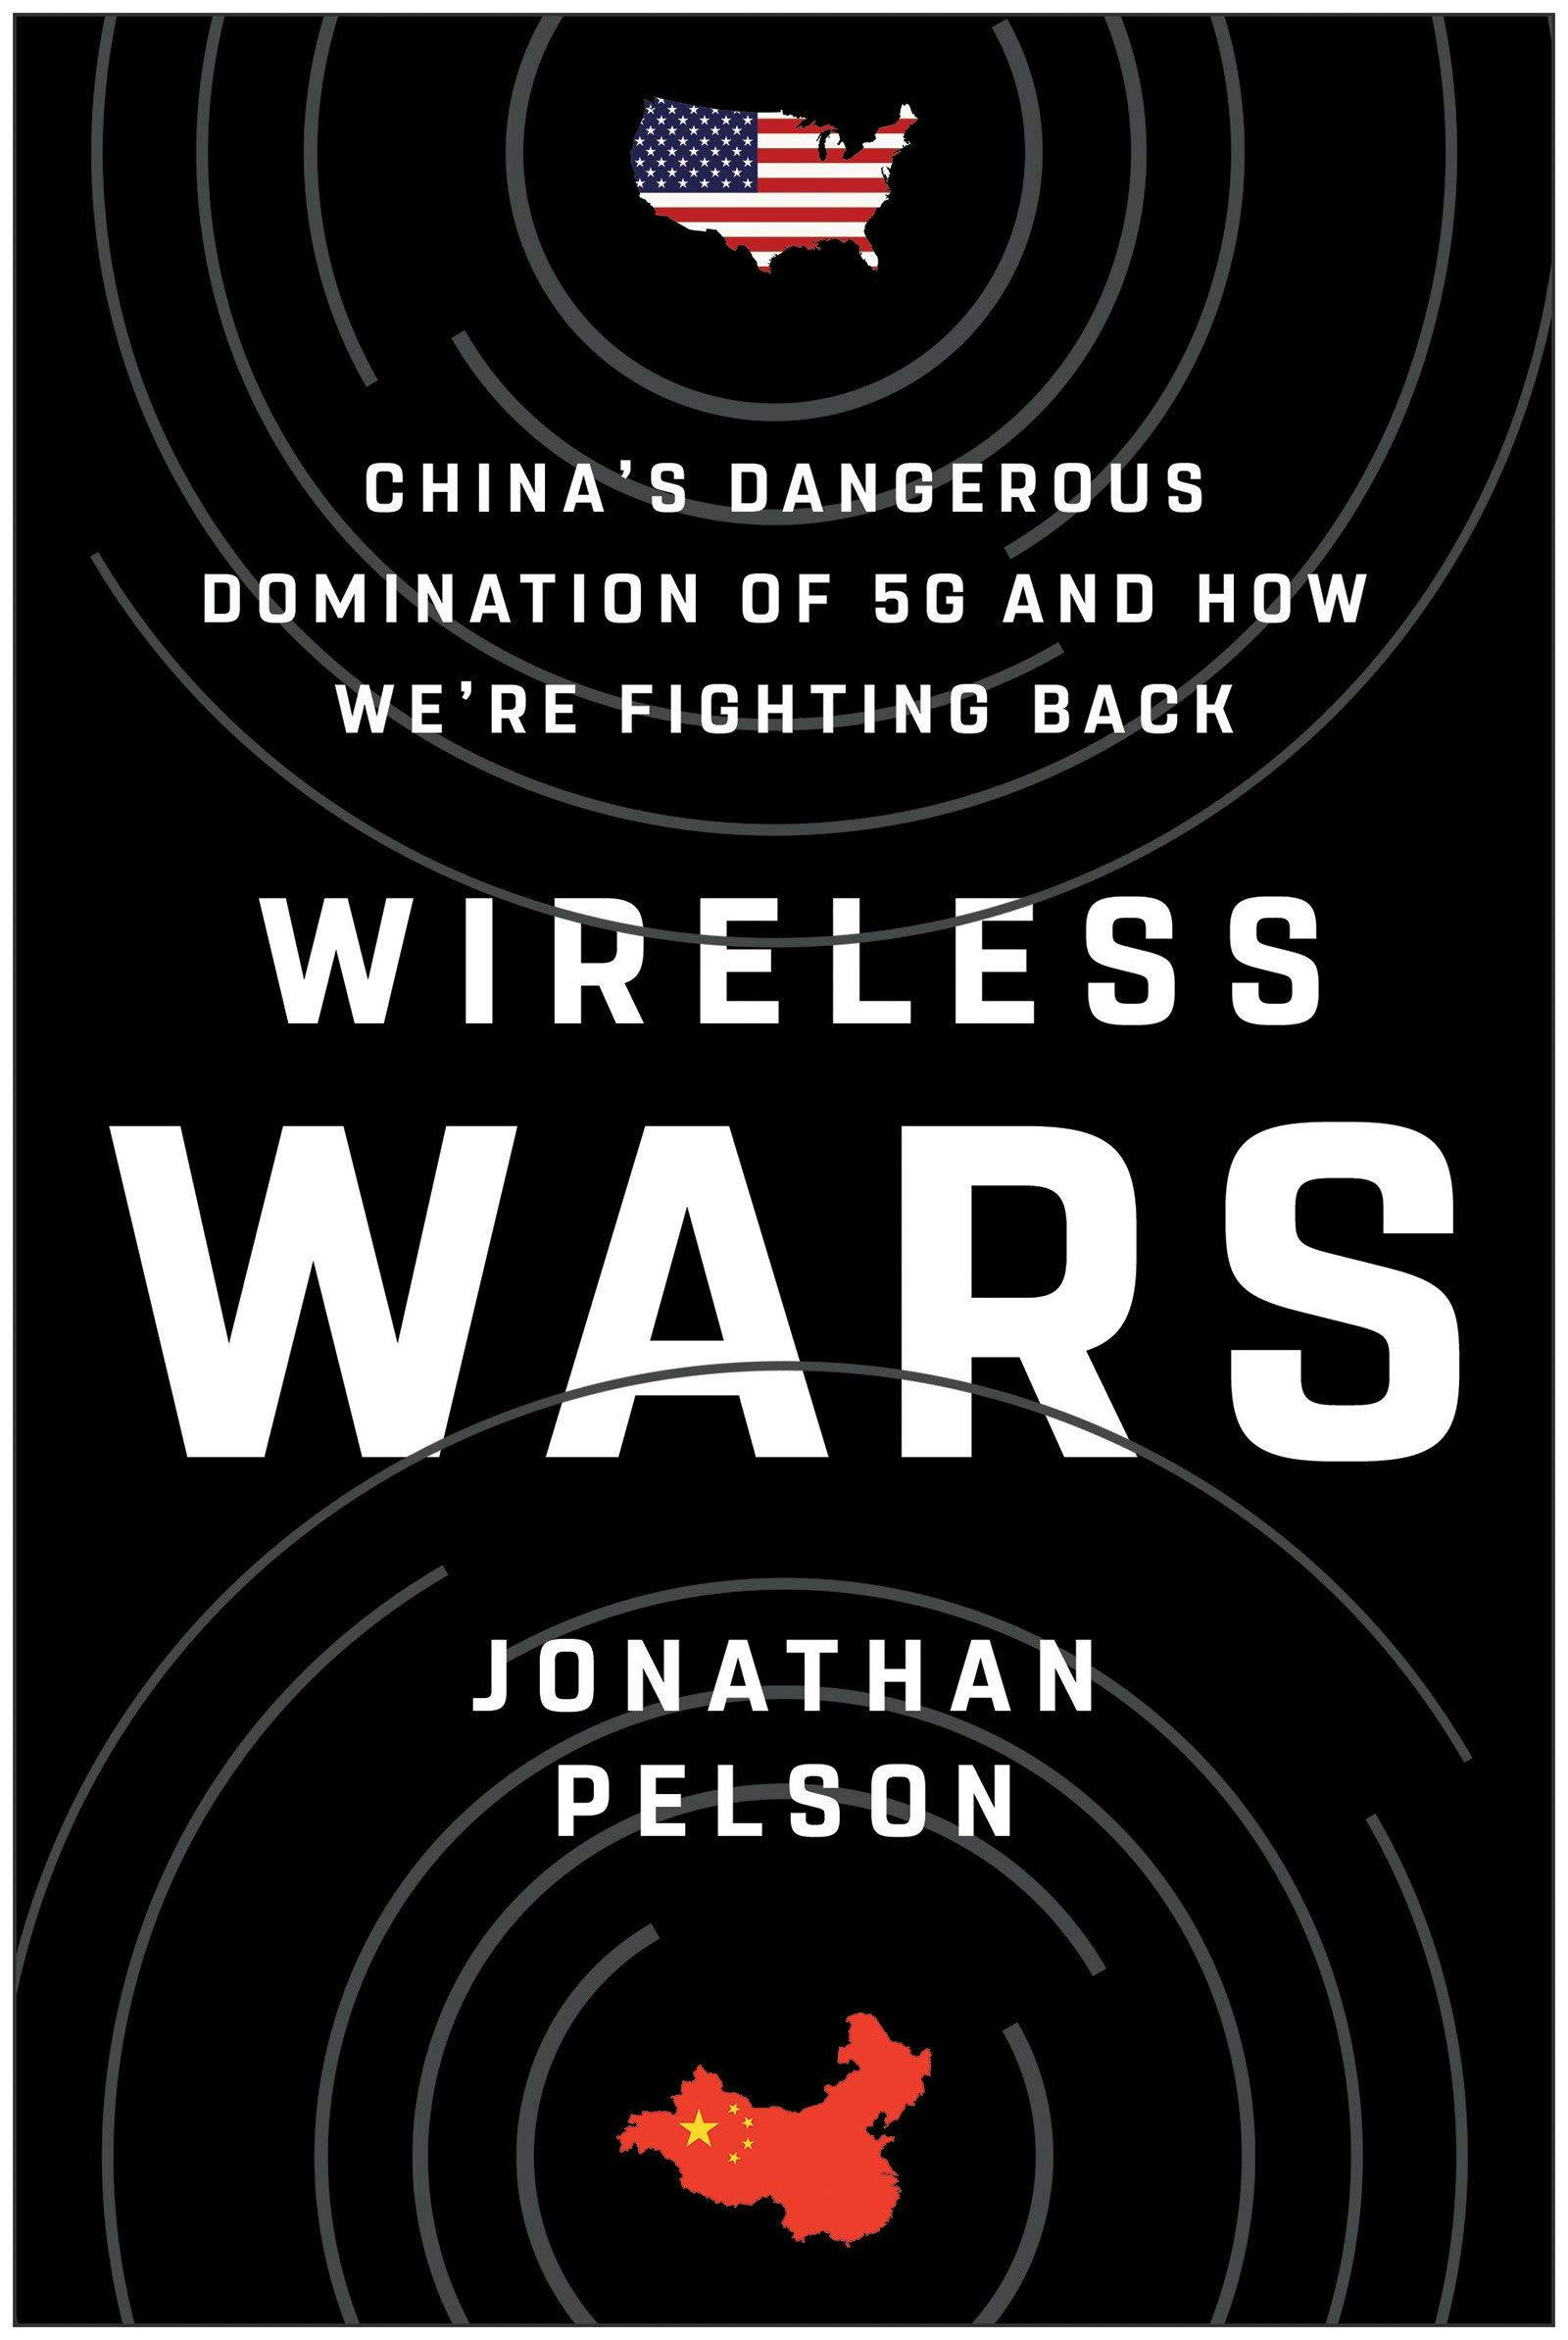 "Wireless Wars" by "Jonathan Pelson"